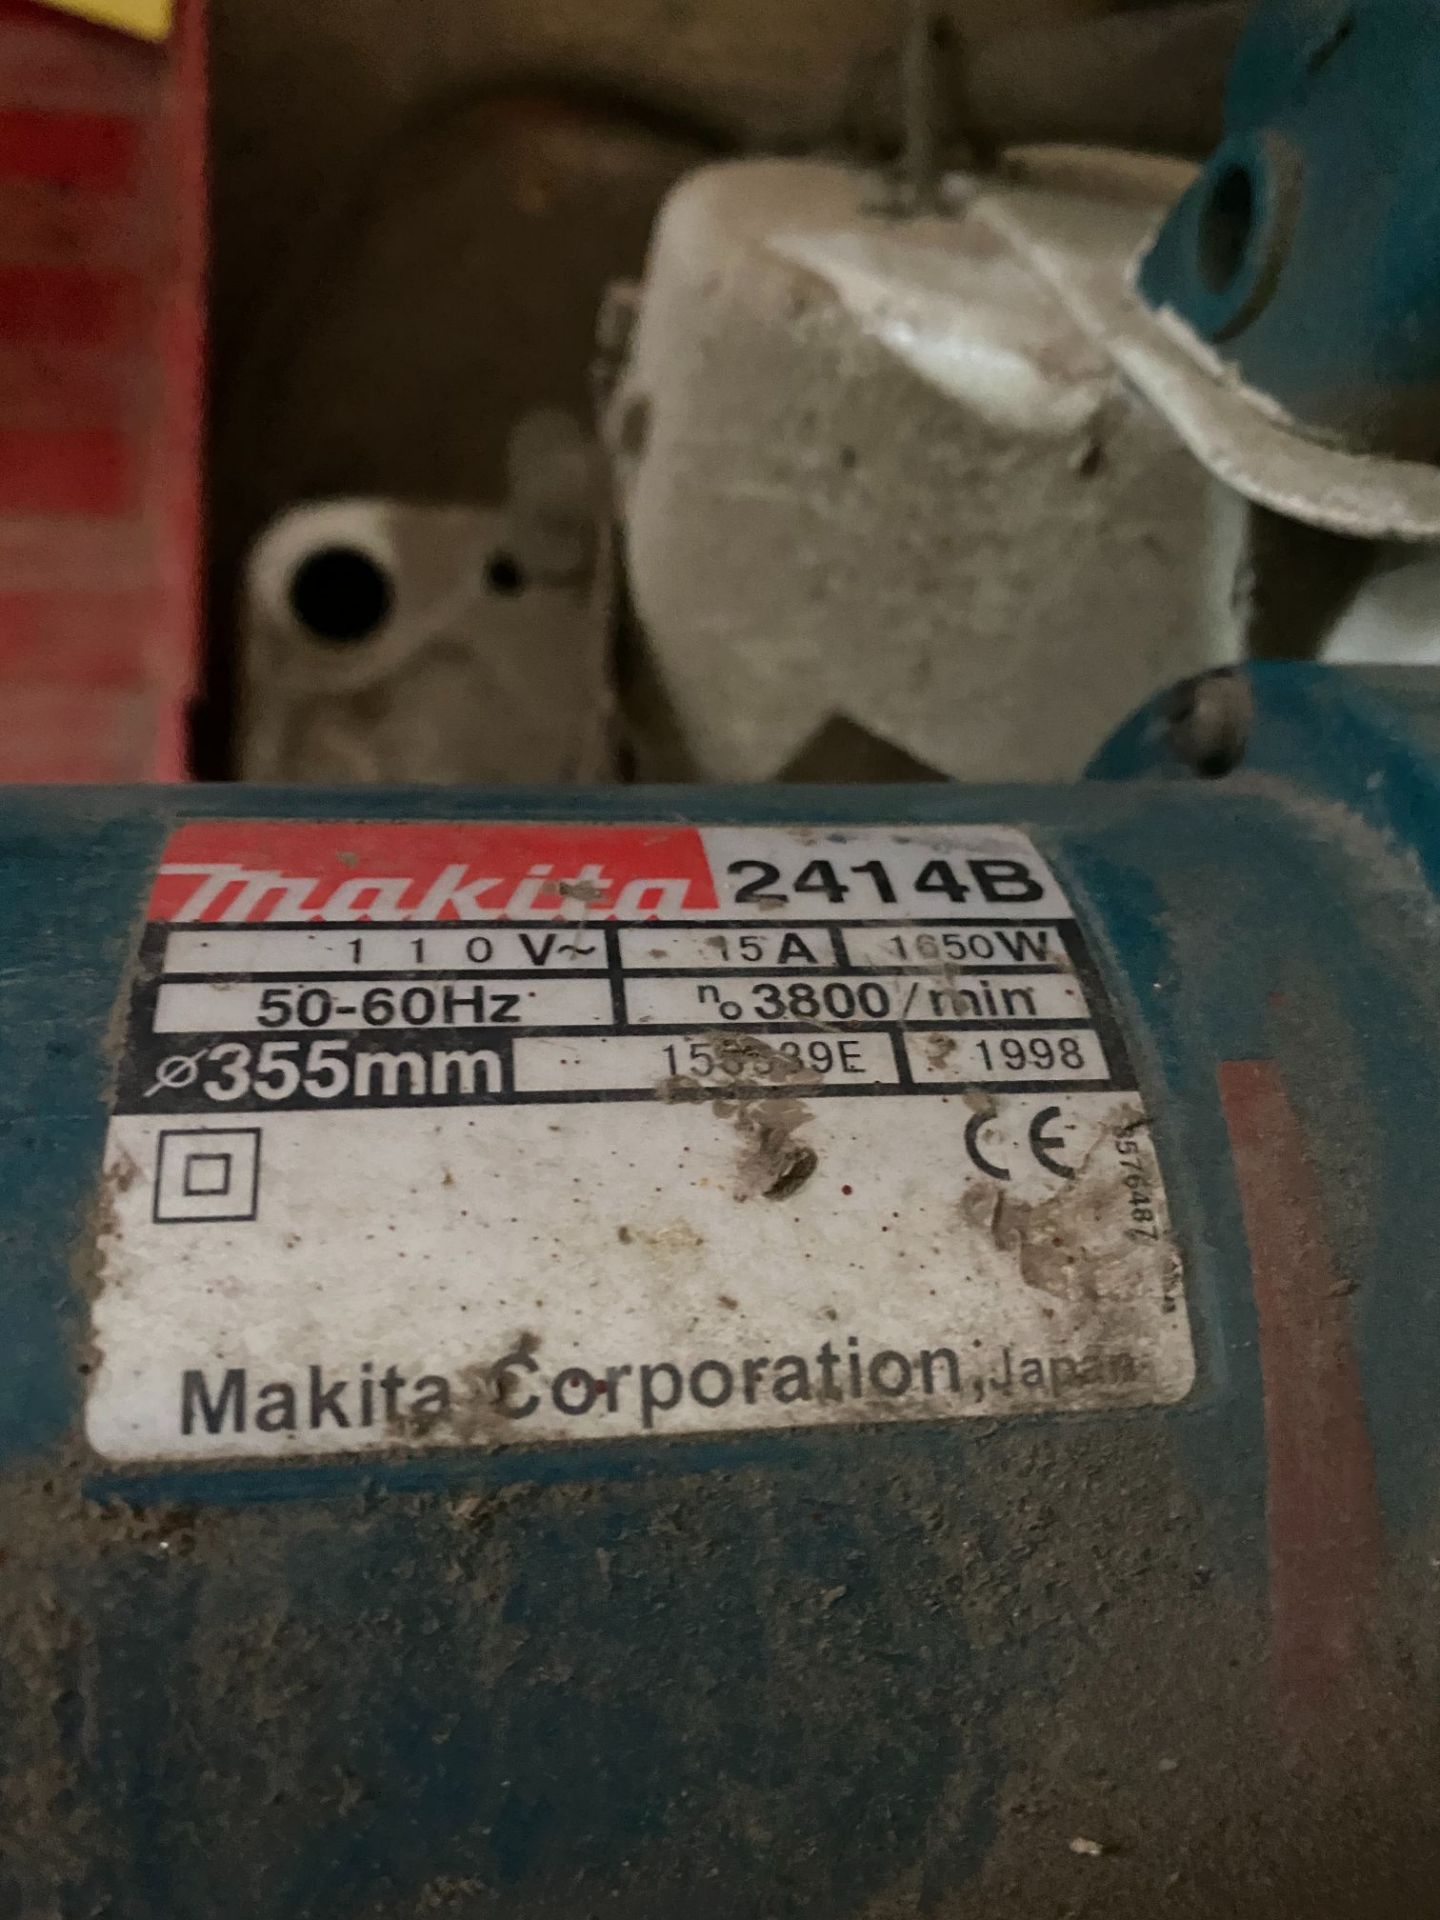 Makita 2414B cut-off saw, serial no: 158539E (1998 - spares only) - Bild 2 aus 2